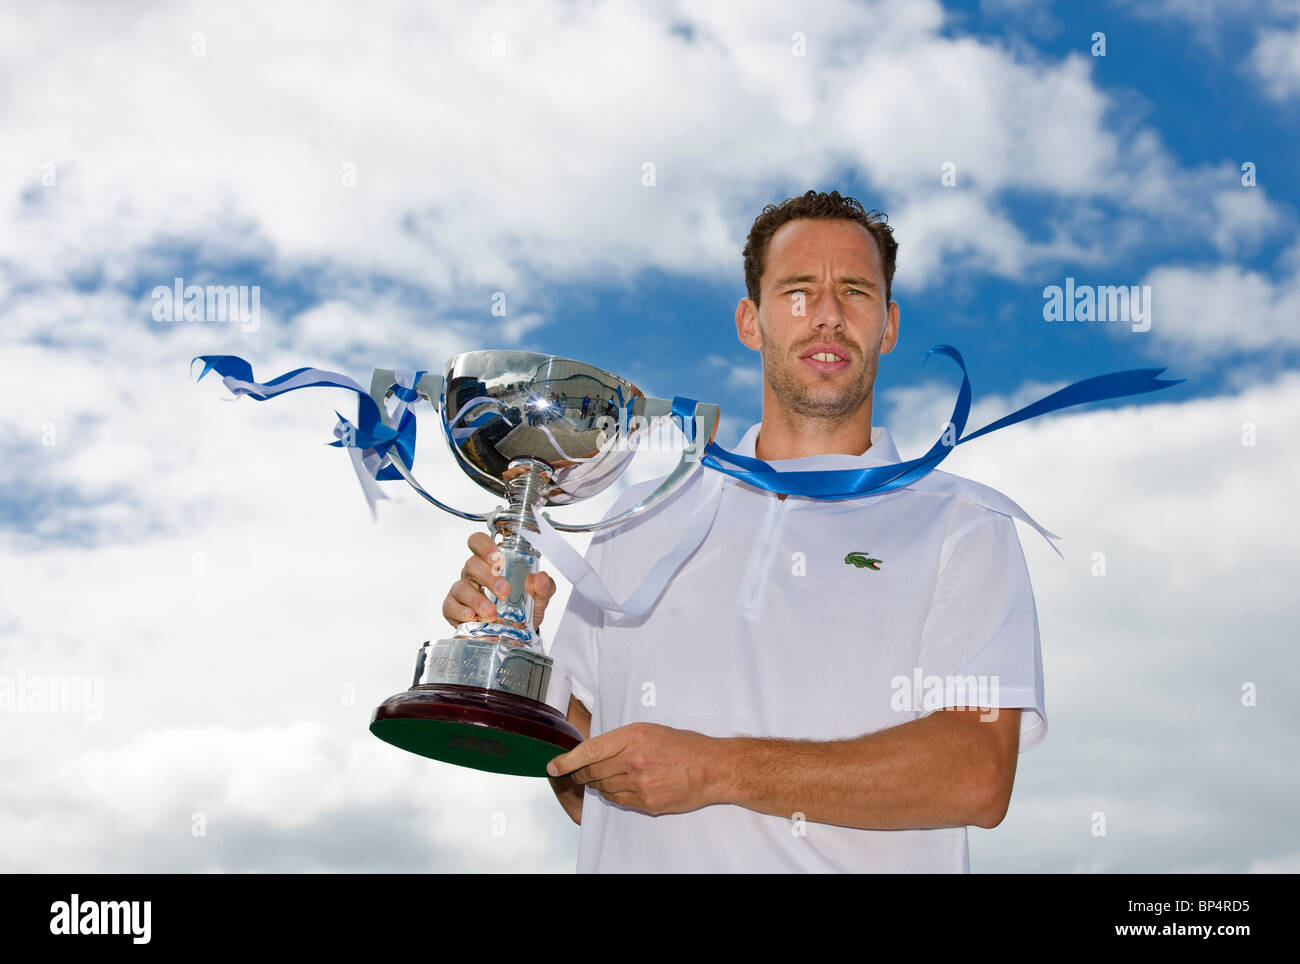 Michael llodra tennis player Banque de photographies et d'images à haute  résolution - Alamy